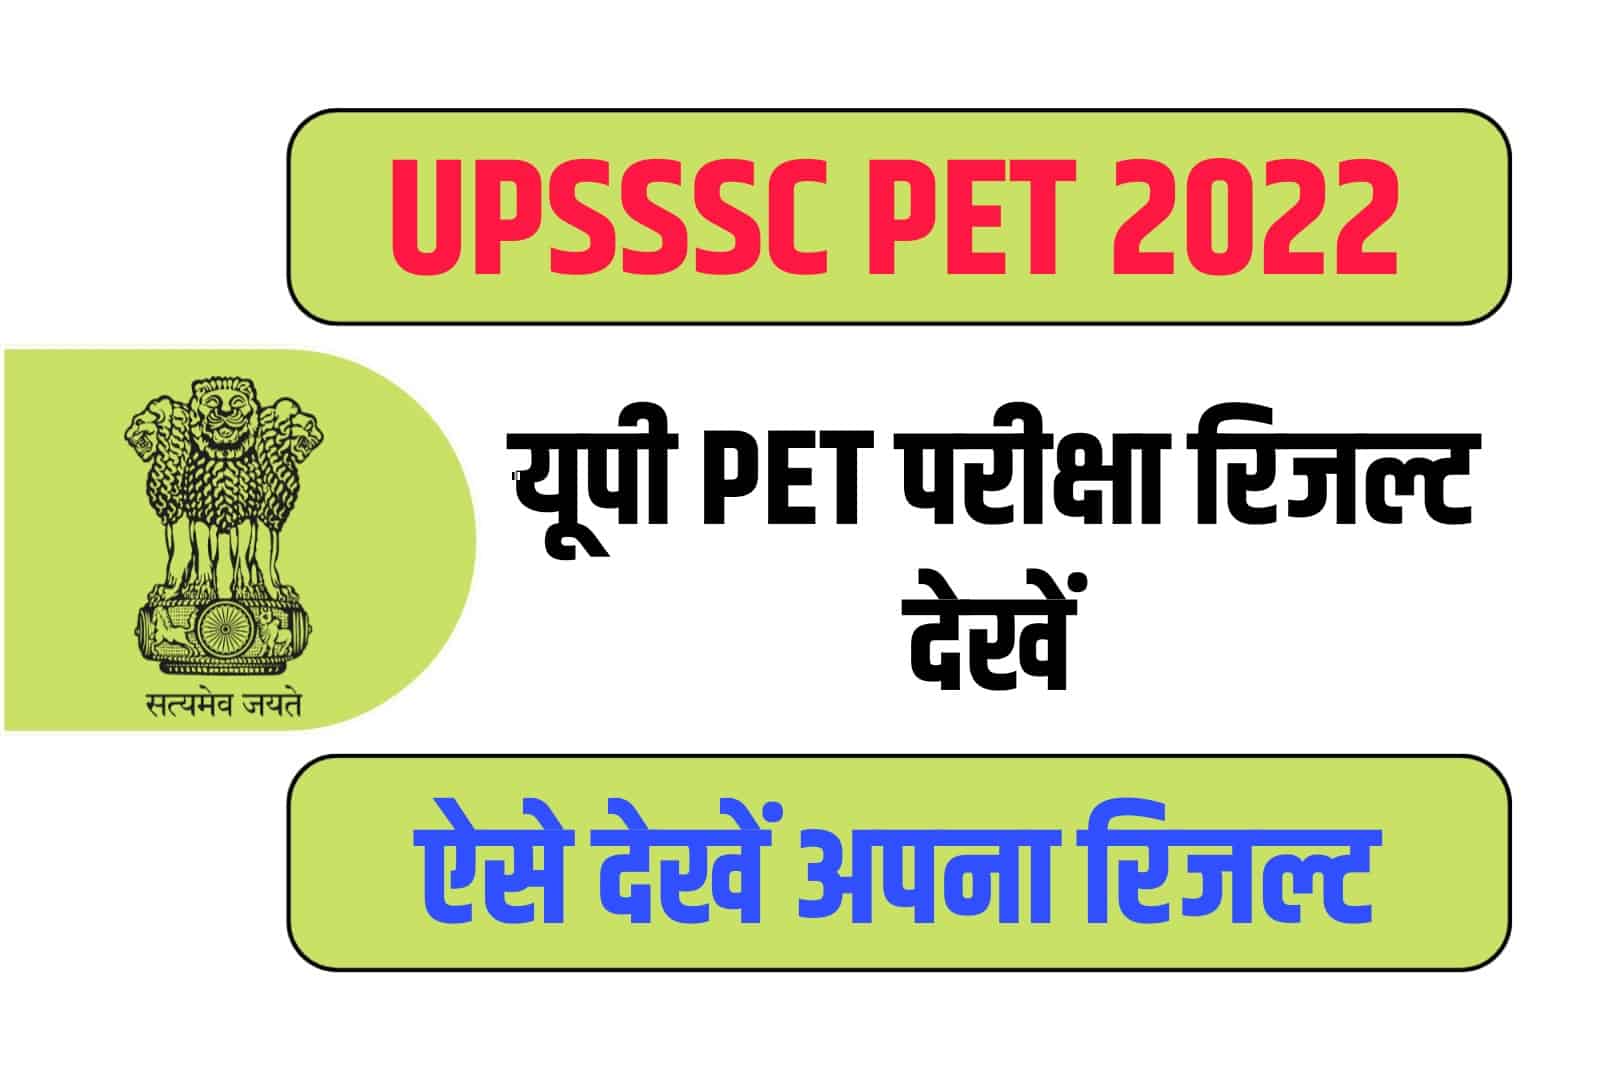 UPSSSC PET 2022 Result हुआ जारी, Direct Link की मदद से देखें अपना पीईटी रिजल्ट